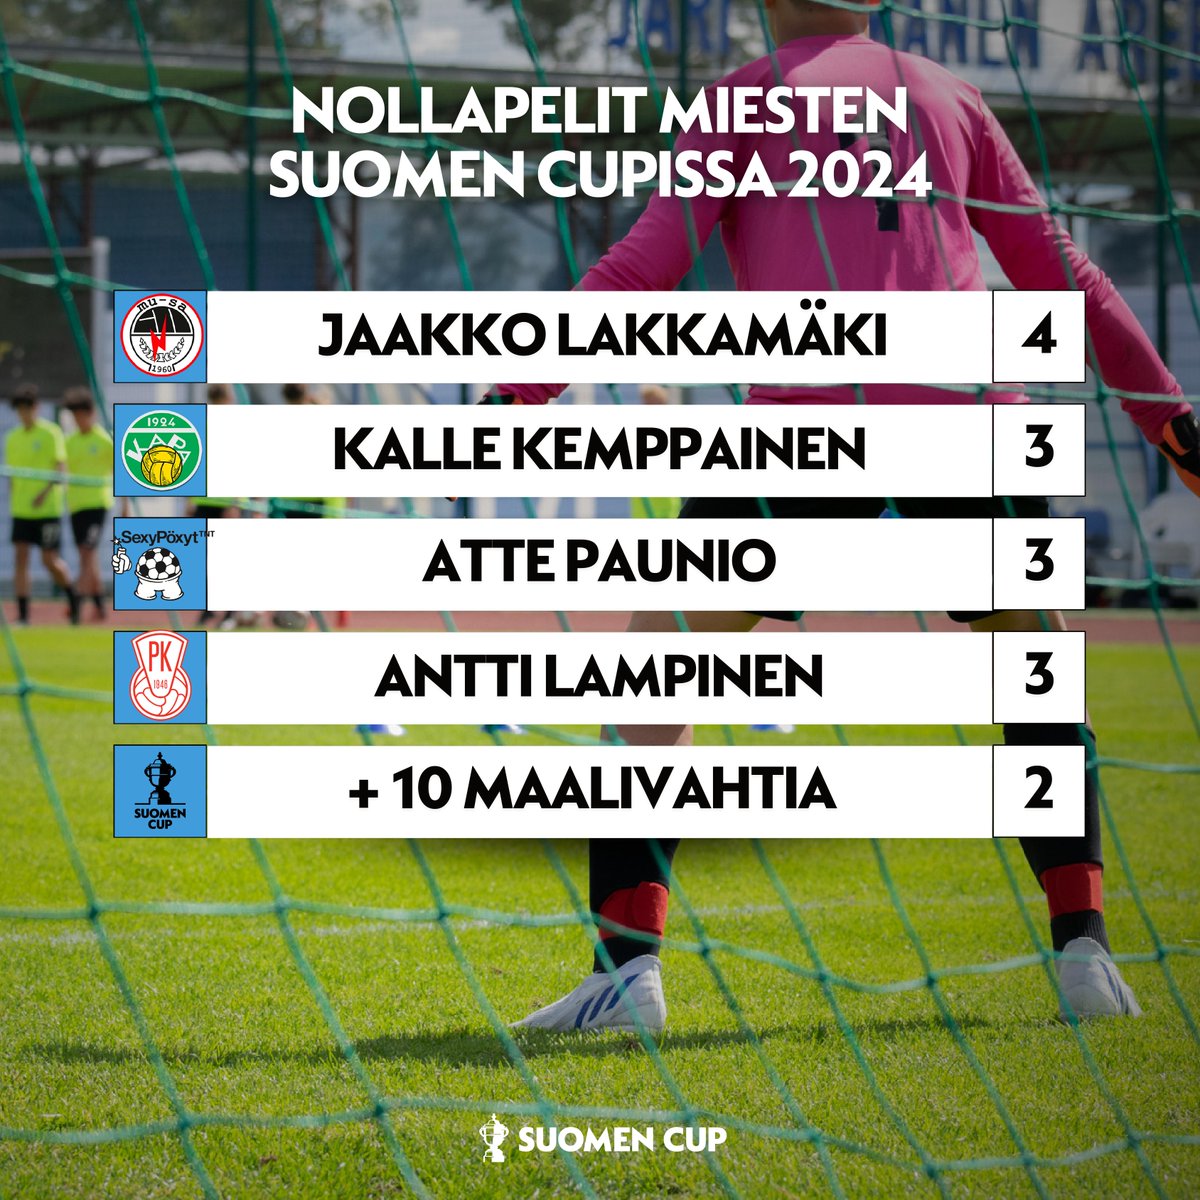 Jaakko Lakkamäen taakse MuSan verkkoon ei ole muuten tehty vielä yhtään maalia tämän vuoden Suomen Cupissa! 🧤🏆

#SuomenCup #jalkapallo